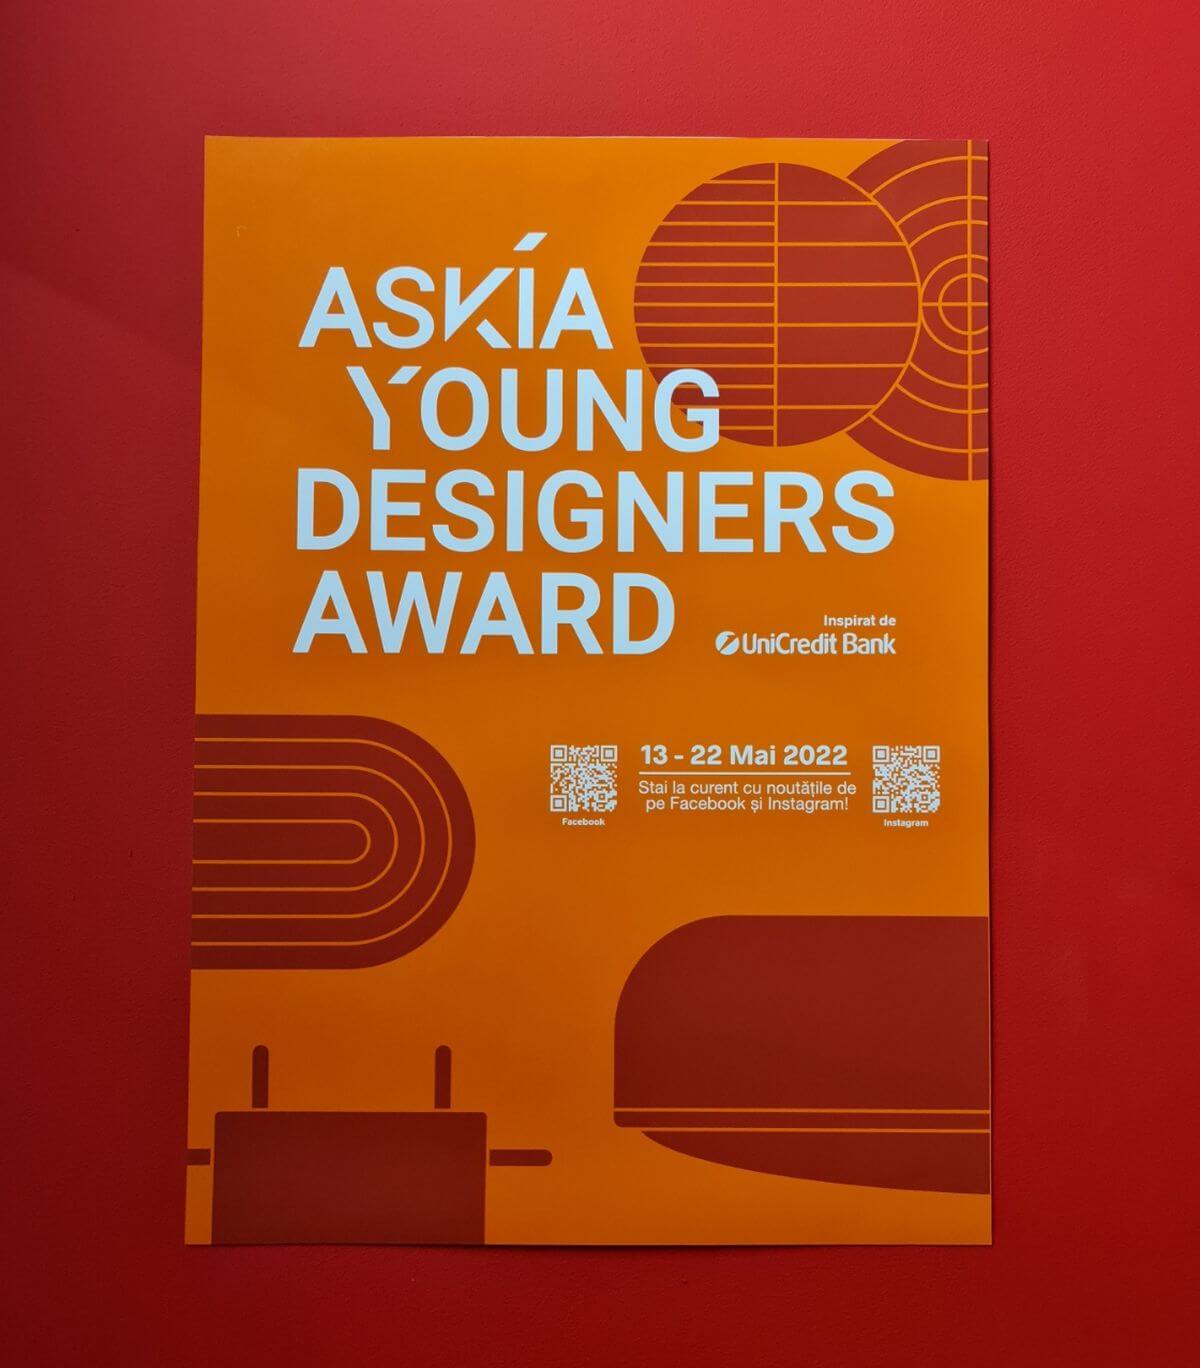 Askia este fondată de Dragoș Motică, nul dintre puținii designeri de produs de la noi din țară. După ce a căștigat premii internaționale pentru creațiile sale, a hotărât să-i inițieze pe tineri creativi în acest domeniu nou pentru România.